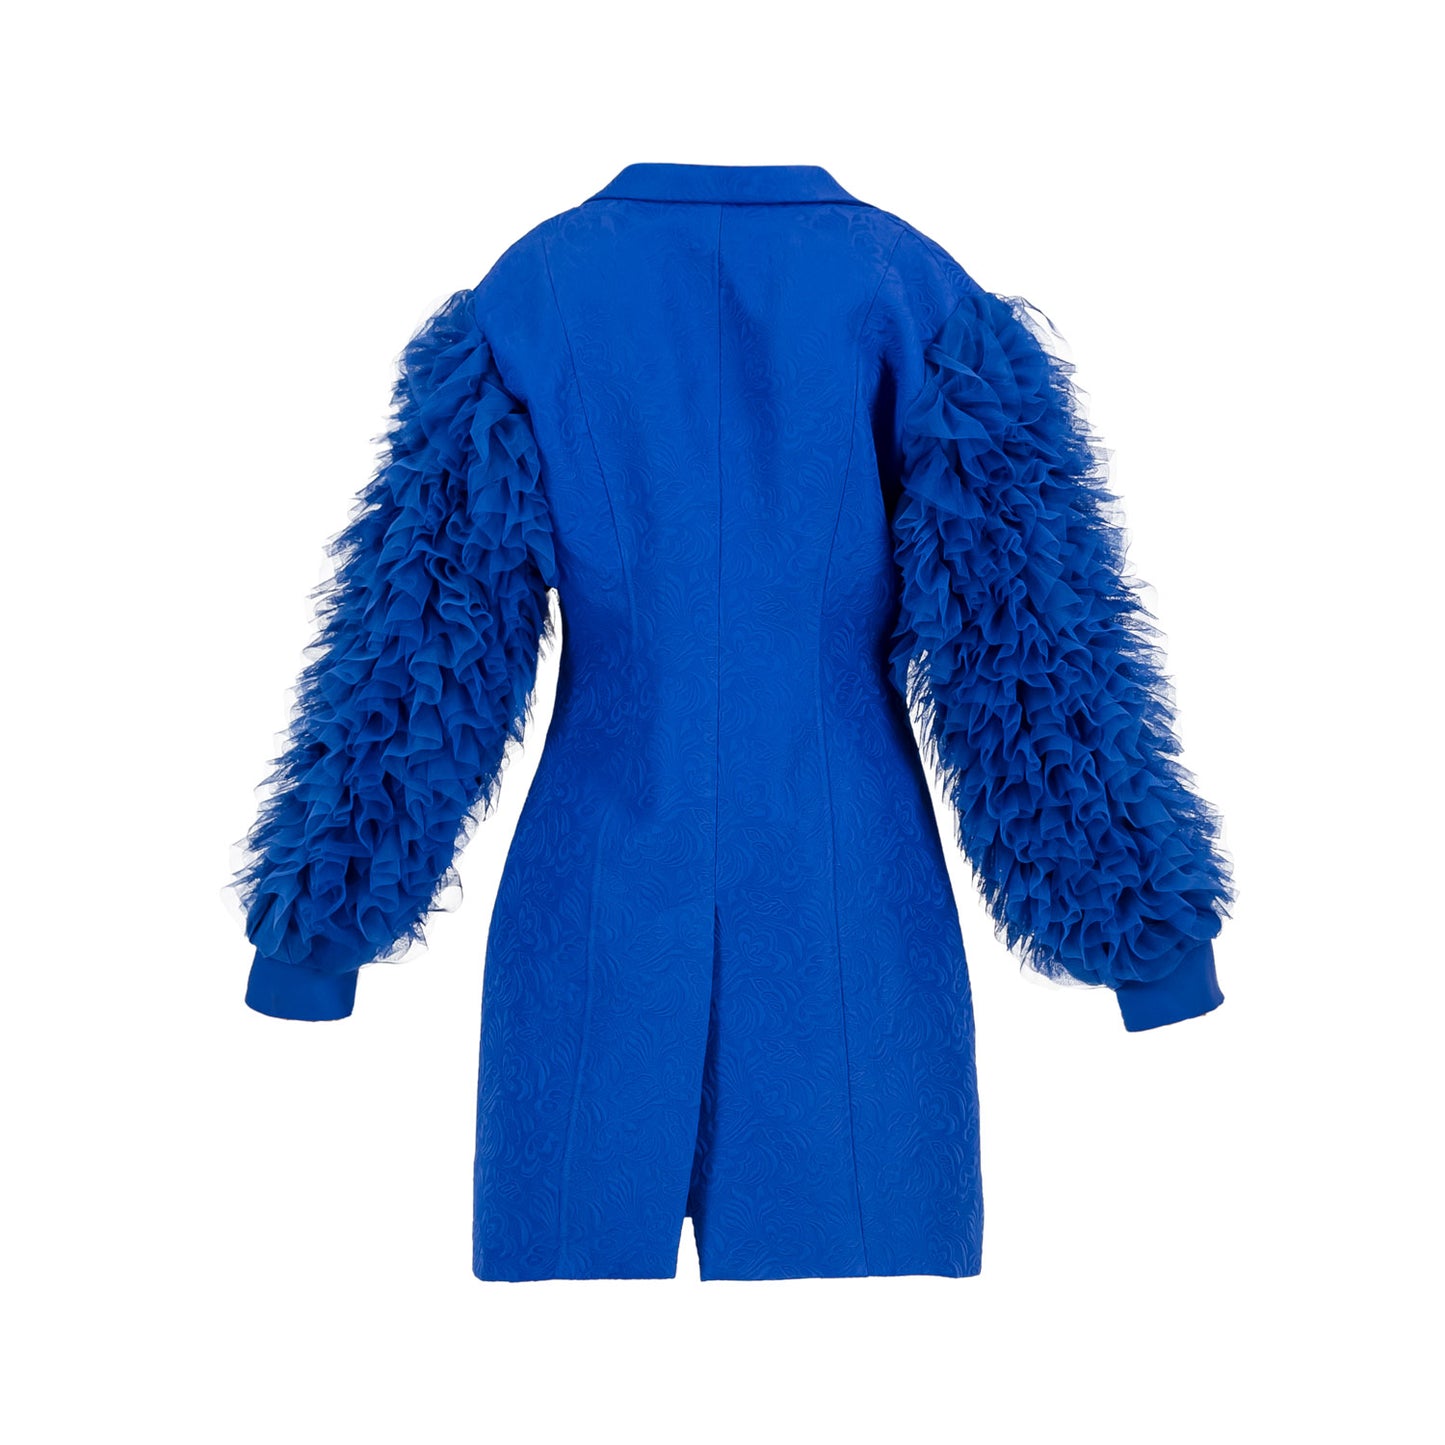 Brocade Frilled Sleeve lined Jacket Royal Blue